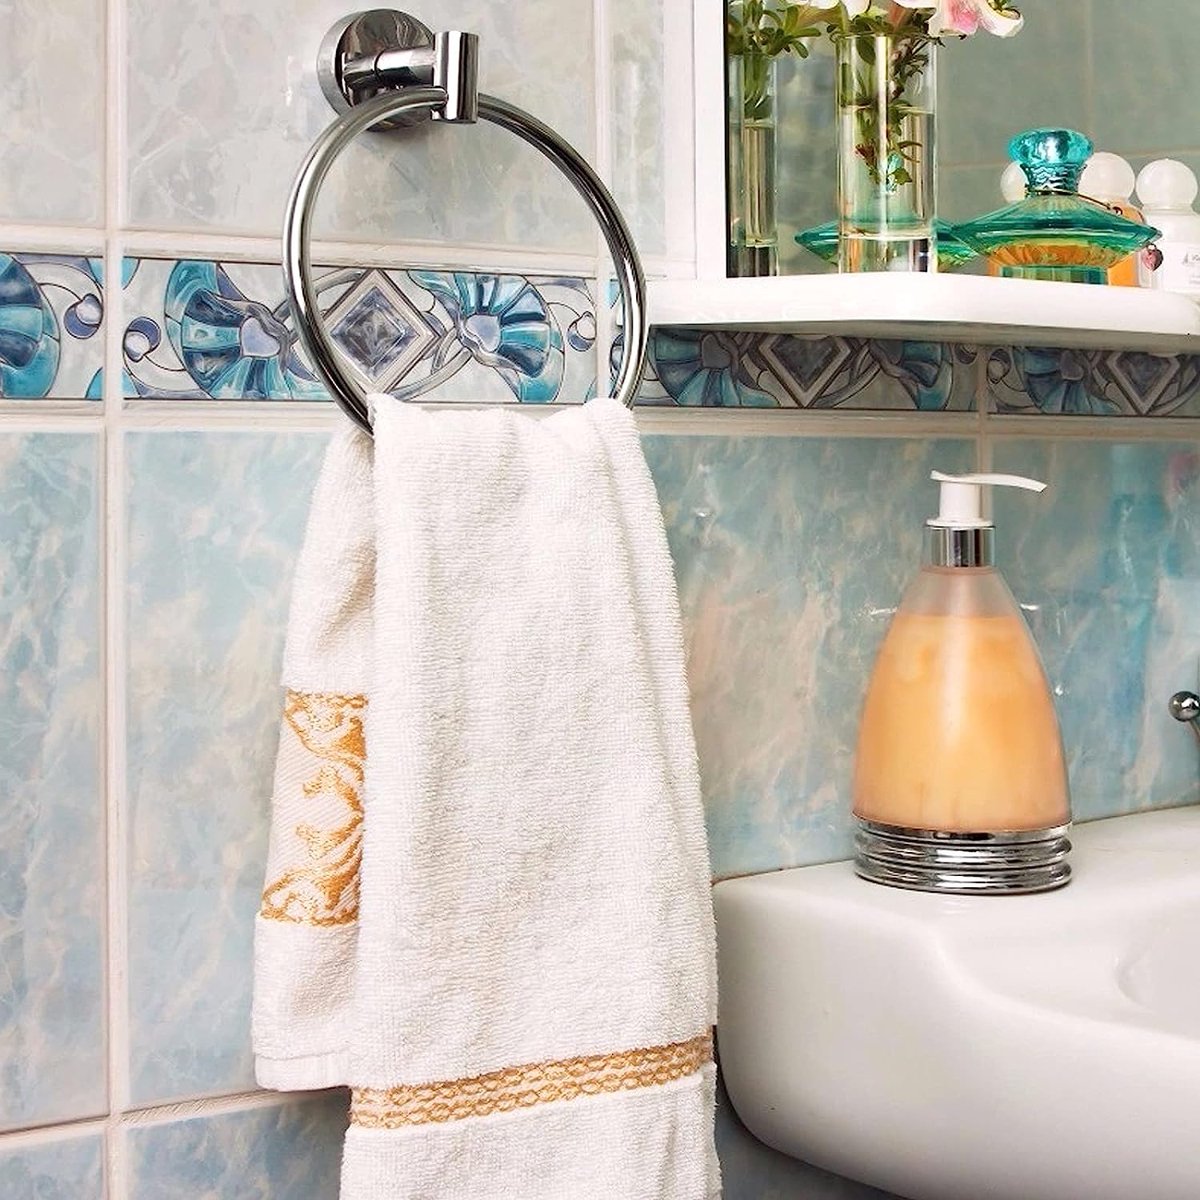 Handdoekring roestvrij staal ronde handdoekringen wandmontage handdoekhouder voor keuken en badkamer met bevestigingsaccessoires (zilver)